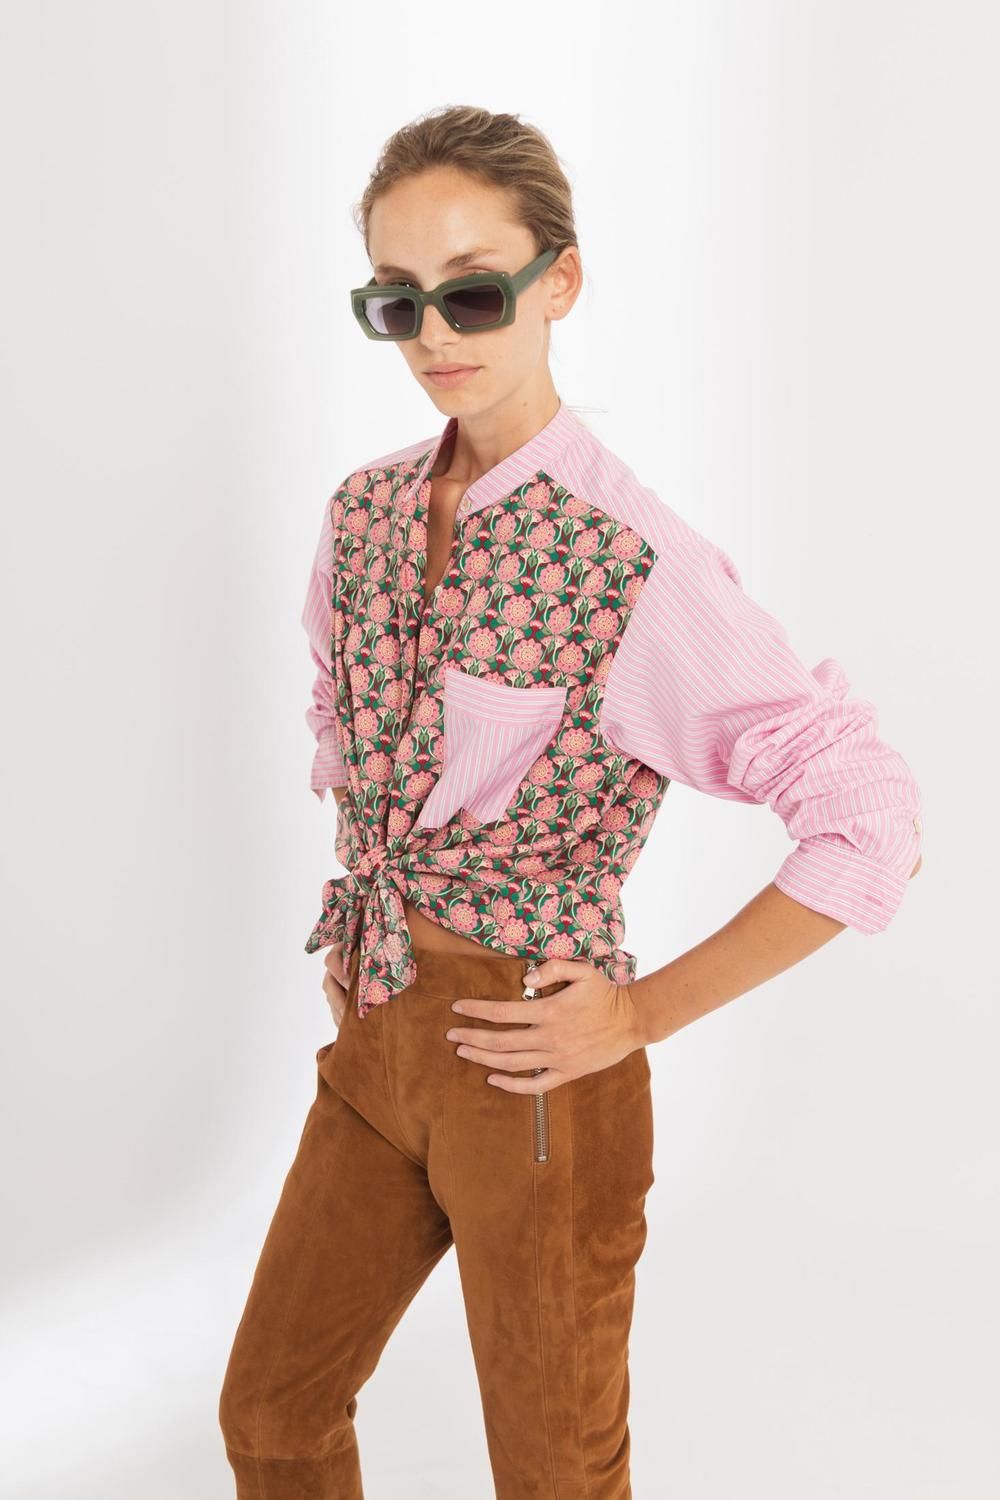 Camisa Luisa en Algodón - Mix de Flores y Rayas Rosa rosado xl